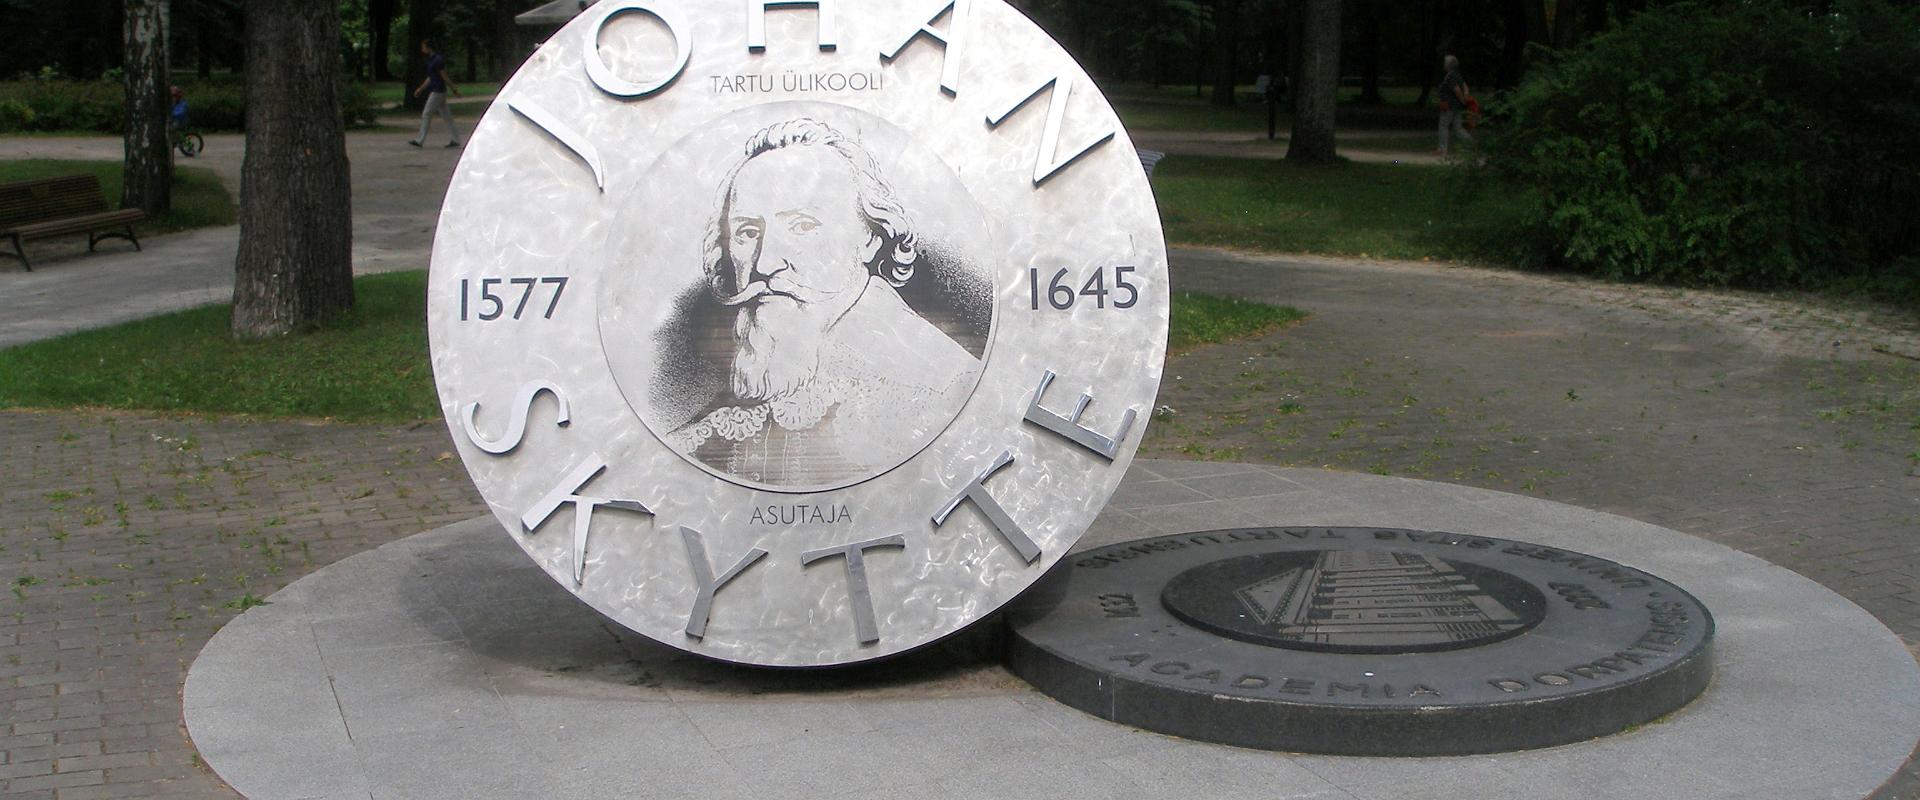 Johan Skytten muistomerkki